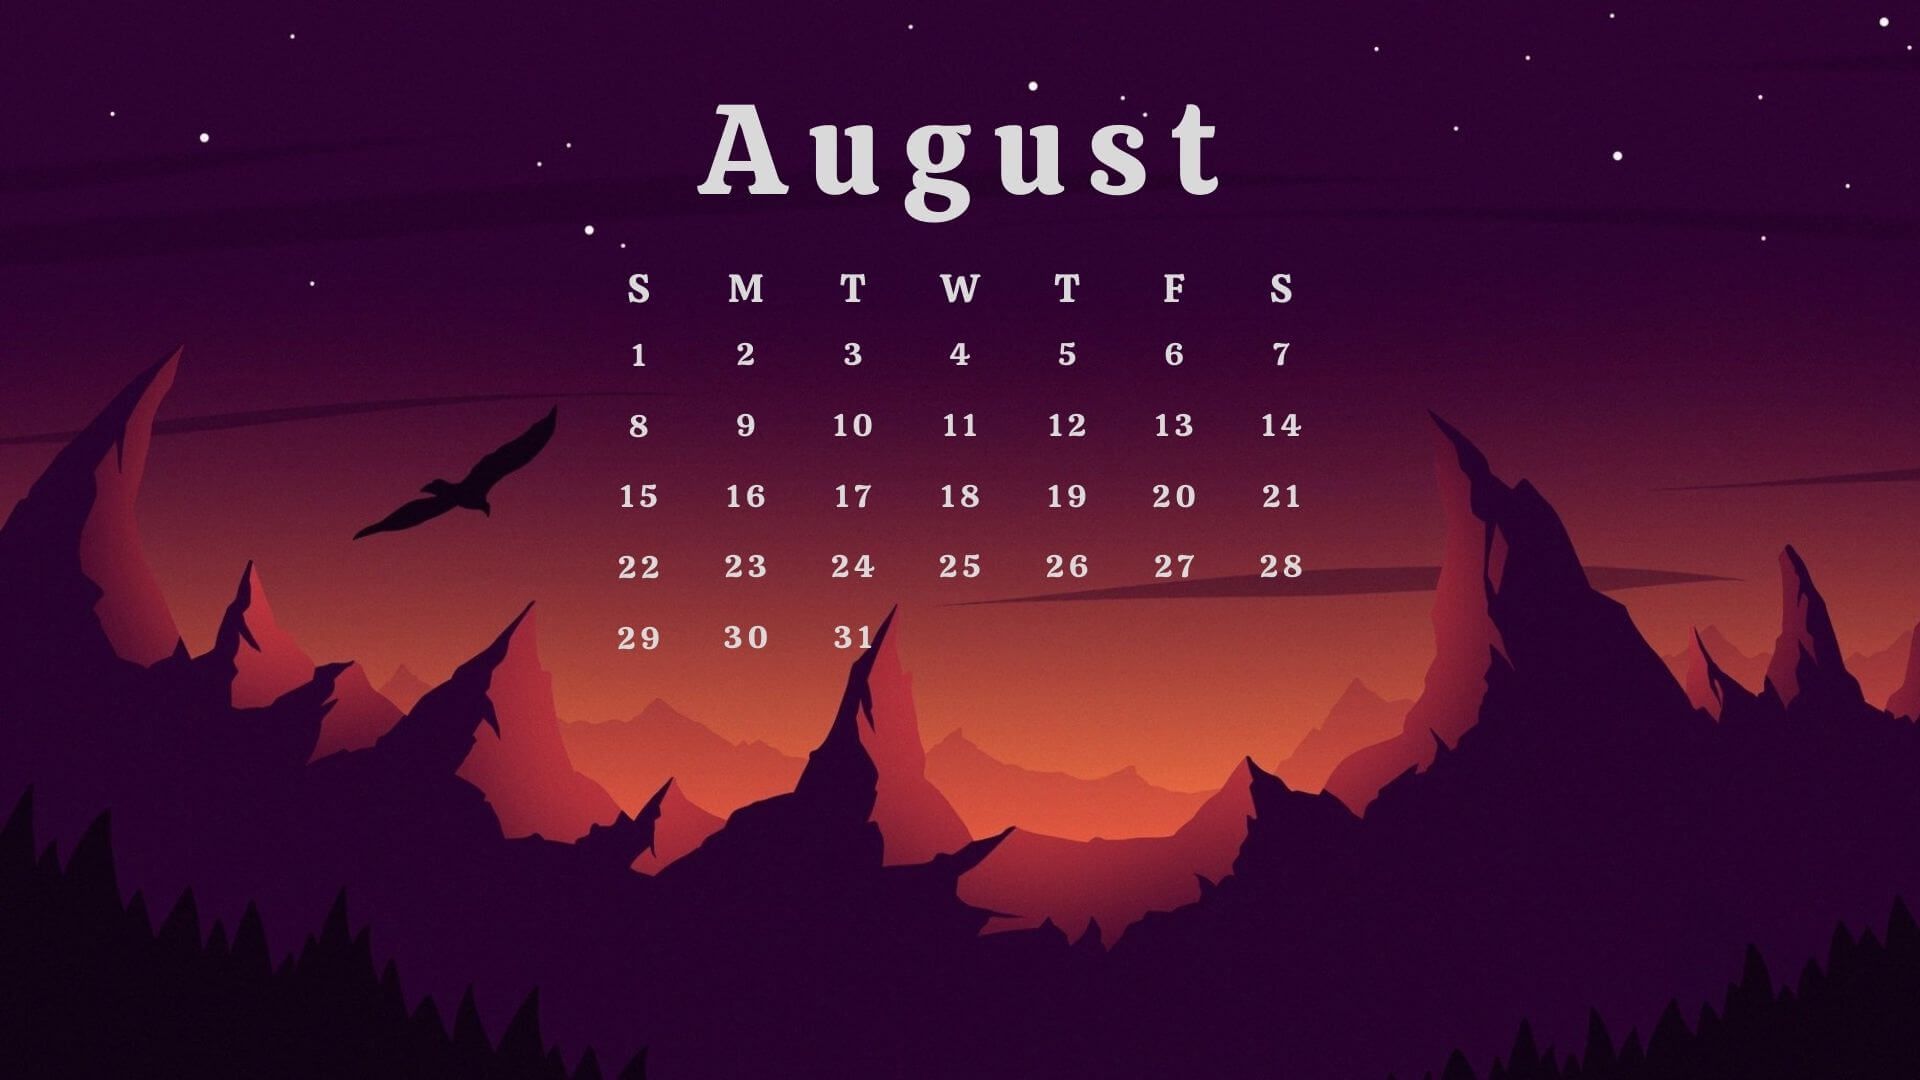 110 Best August Calendar ideas in 2021 august calendar calendar 1920x1080